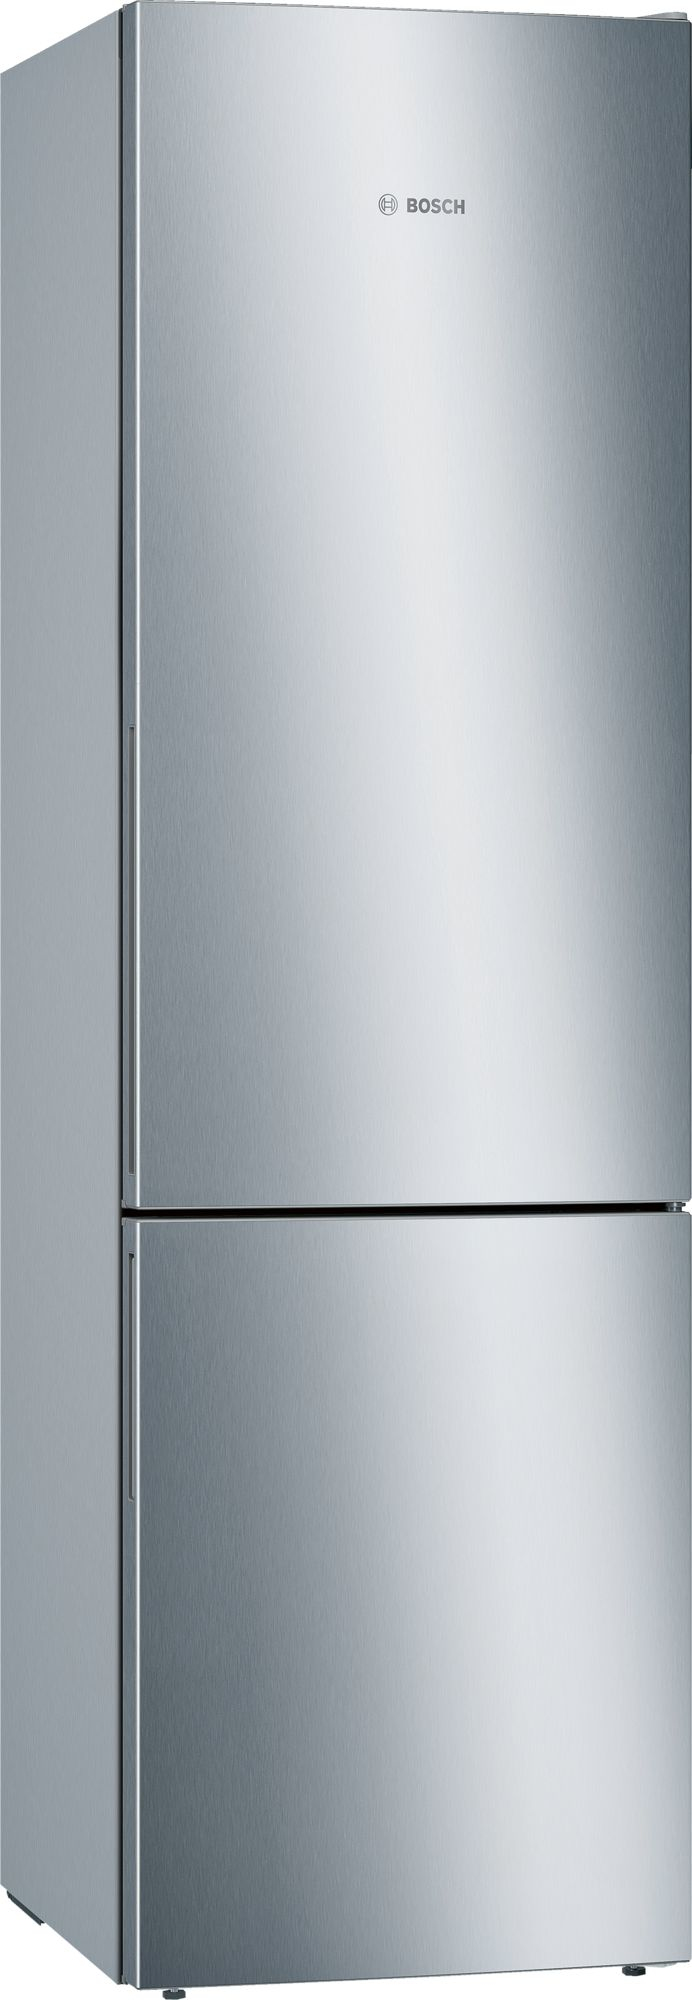 Bosch Serie 6 KGE39AICA frigorifero con congelatore Libera installazione Acciaio inossidabile 337 L A+++ [KGE39AICA]